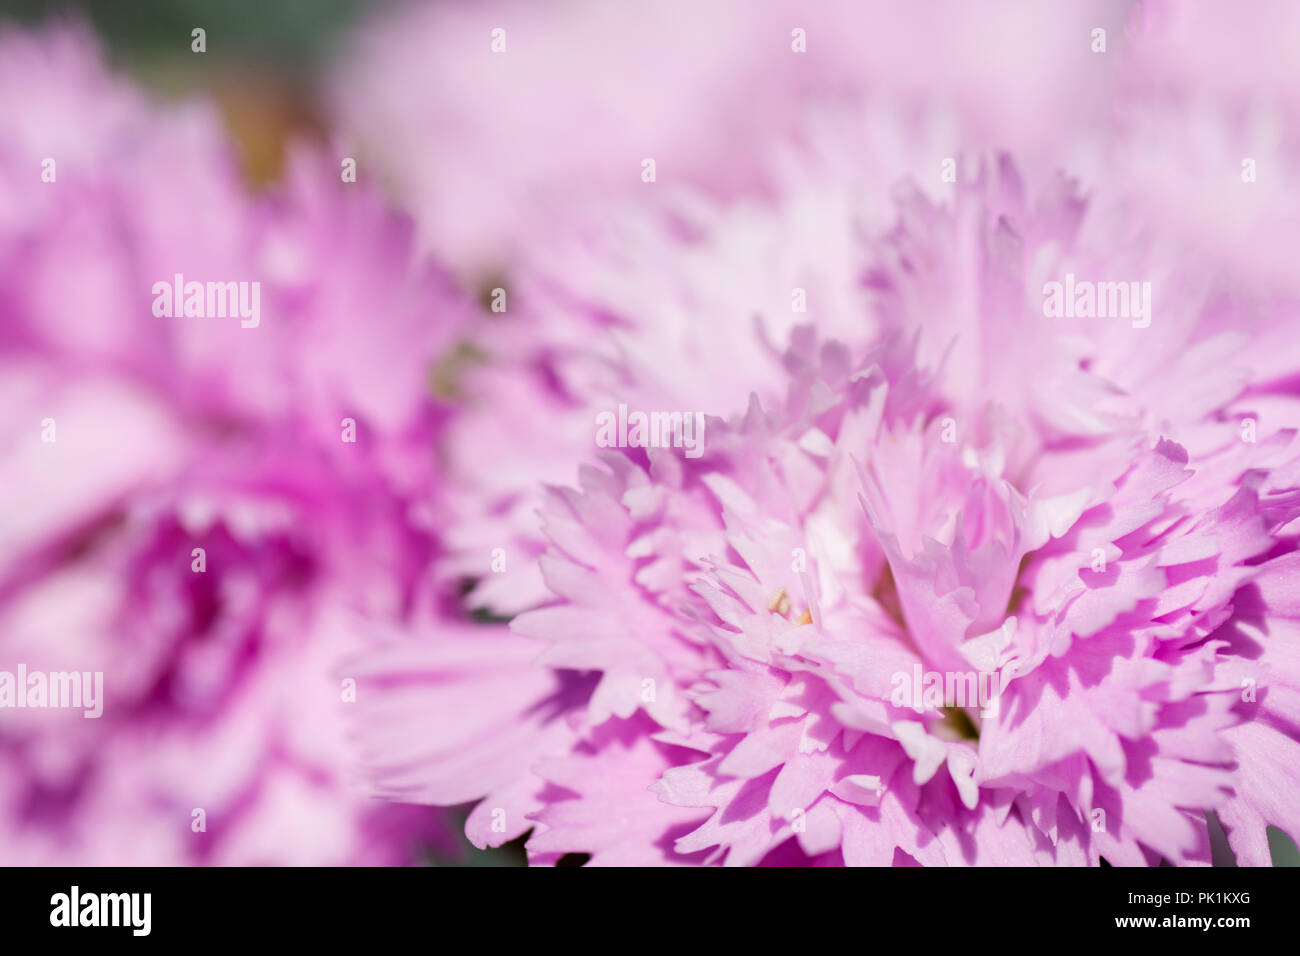 Eine extreme Nahaufnahme von einem rosa Nelke Blume. Stockfoto